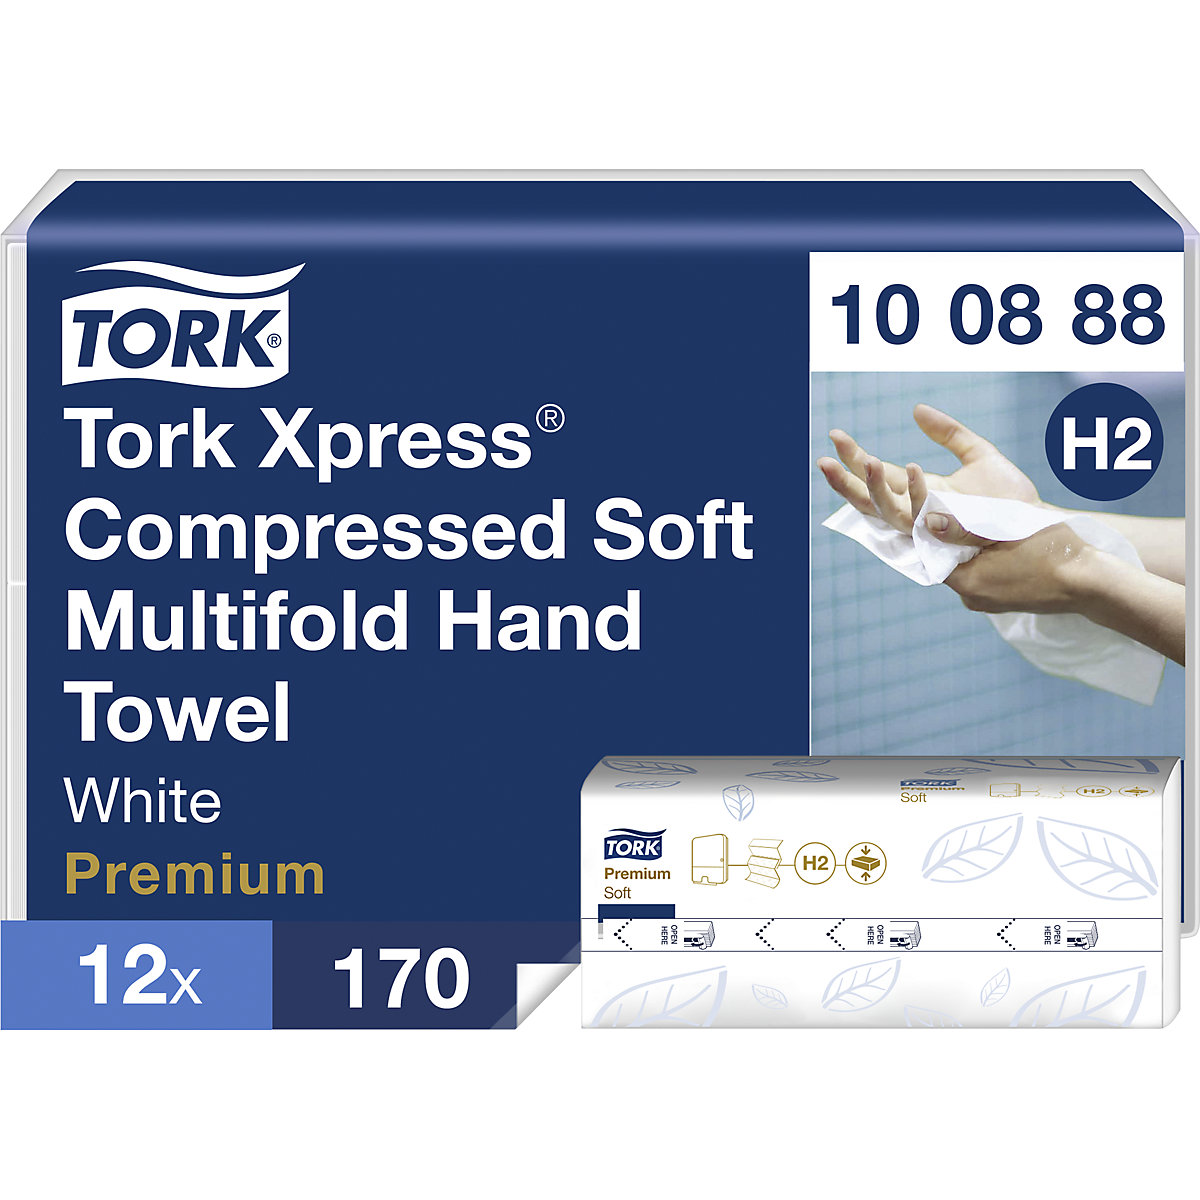 Xpress komprimierte Multifold-Papierhandtücher TORK